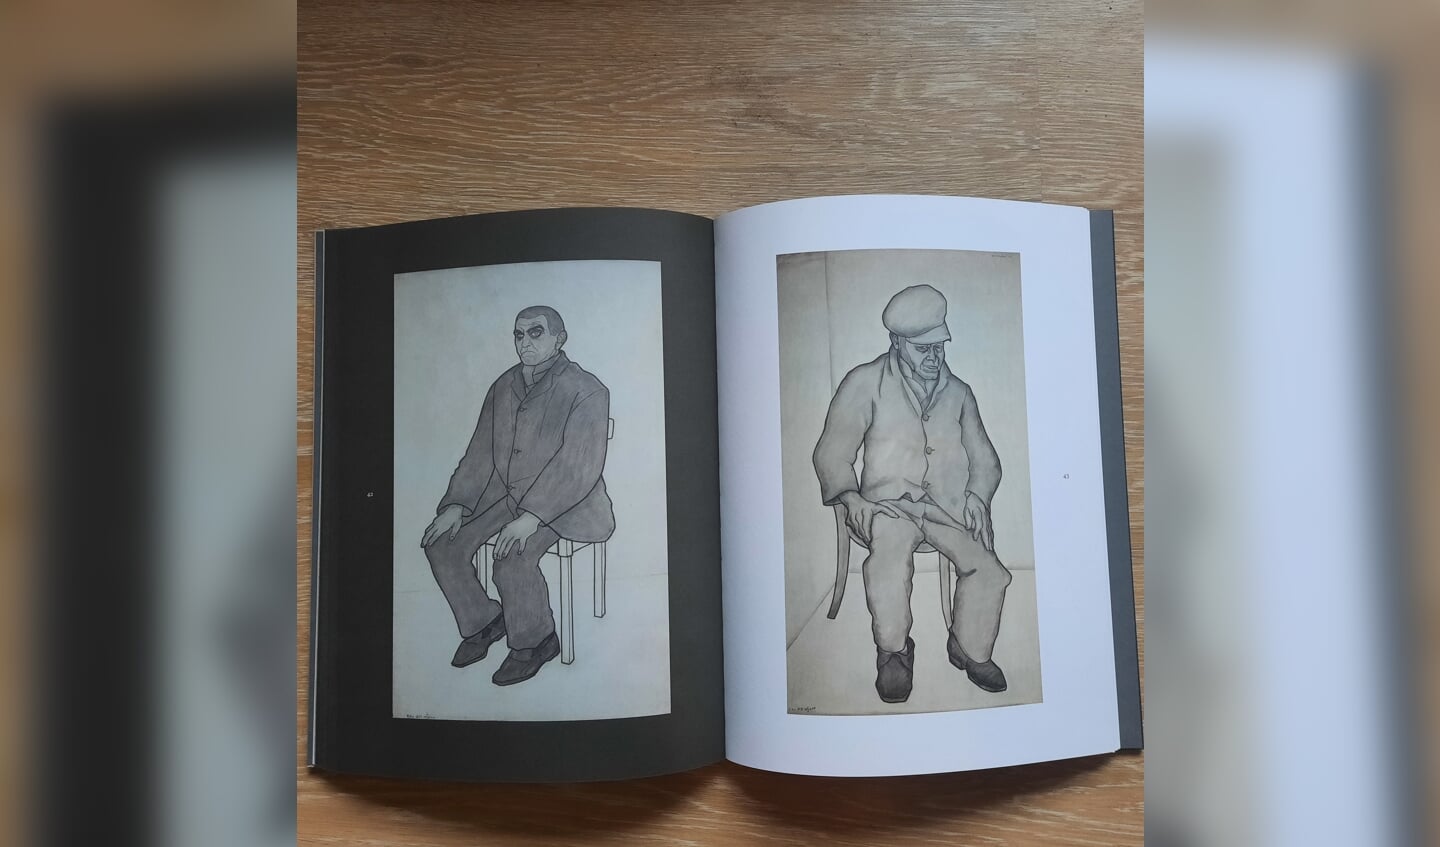 Een beeld uit het boek met de 32 ‘krankzinnigen-tekeningen’